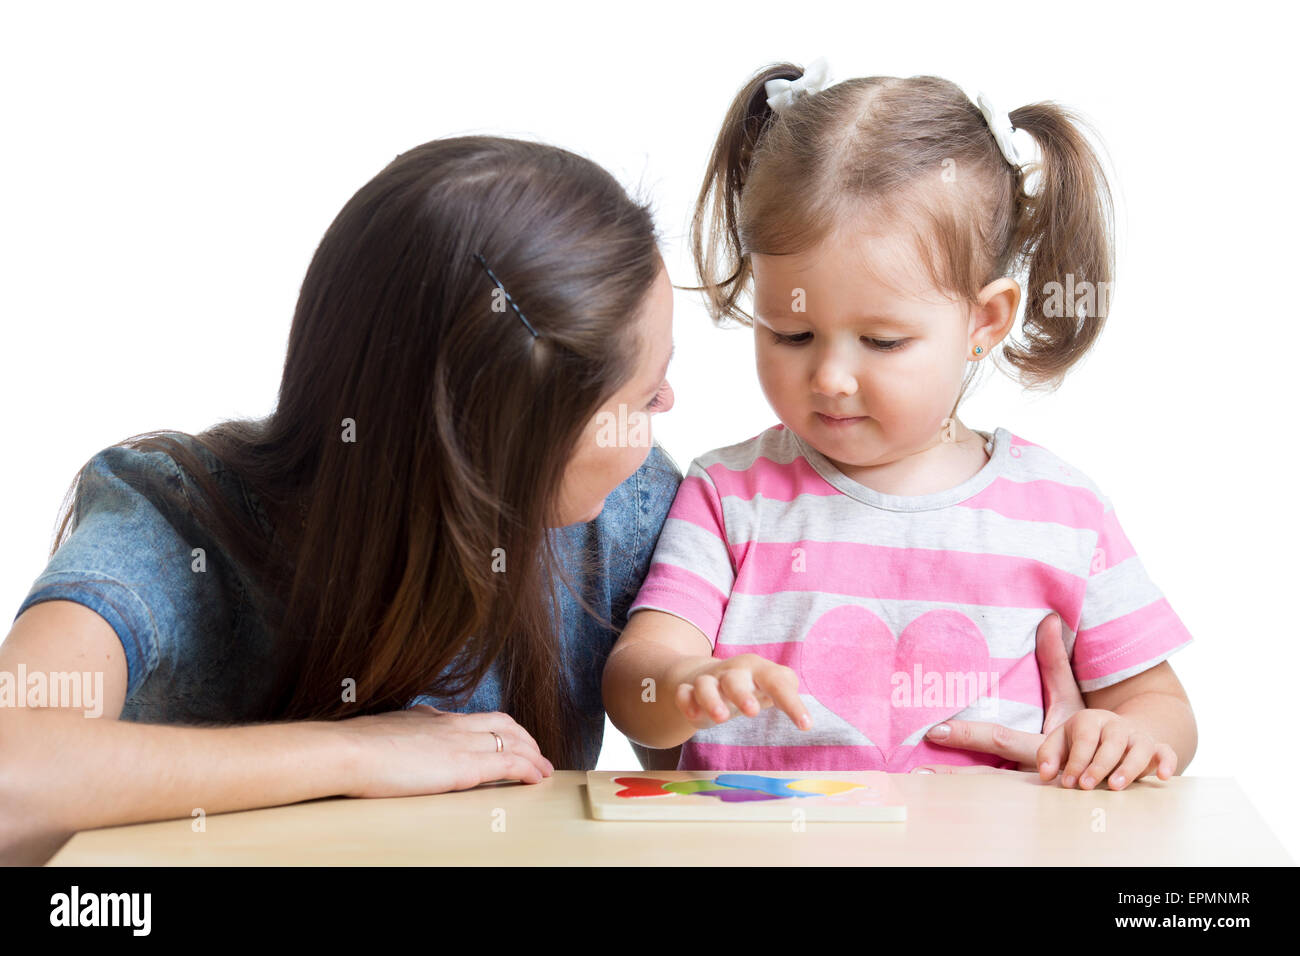 Kind Mädchen und Mutter spielen zusammen mit Puzzle Spielzeug Stockfoto